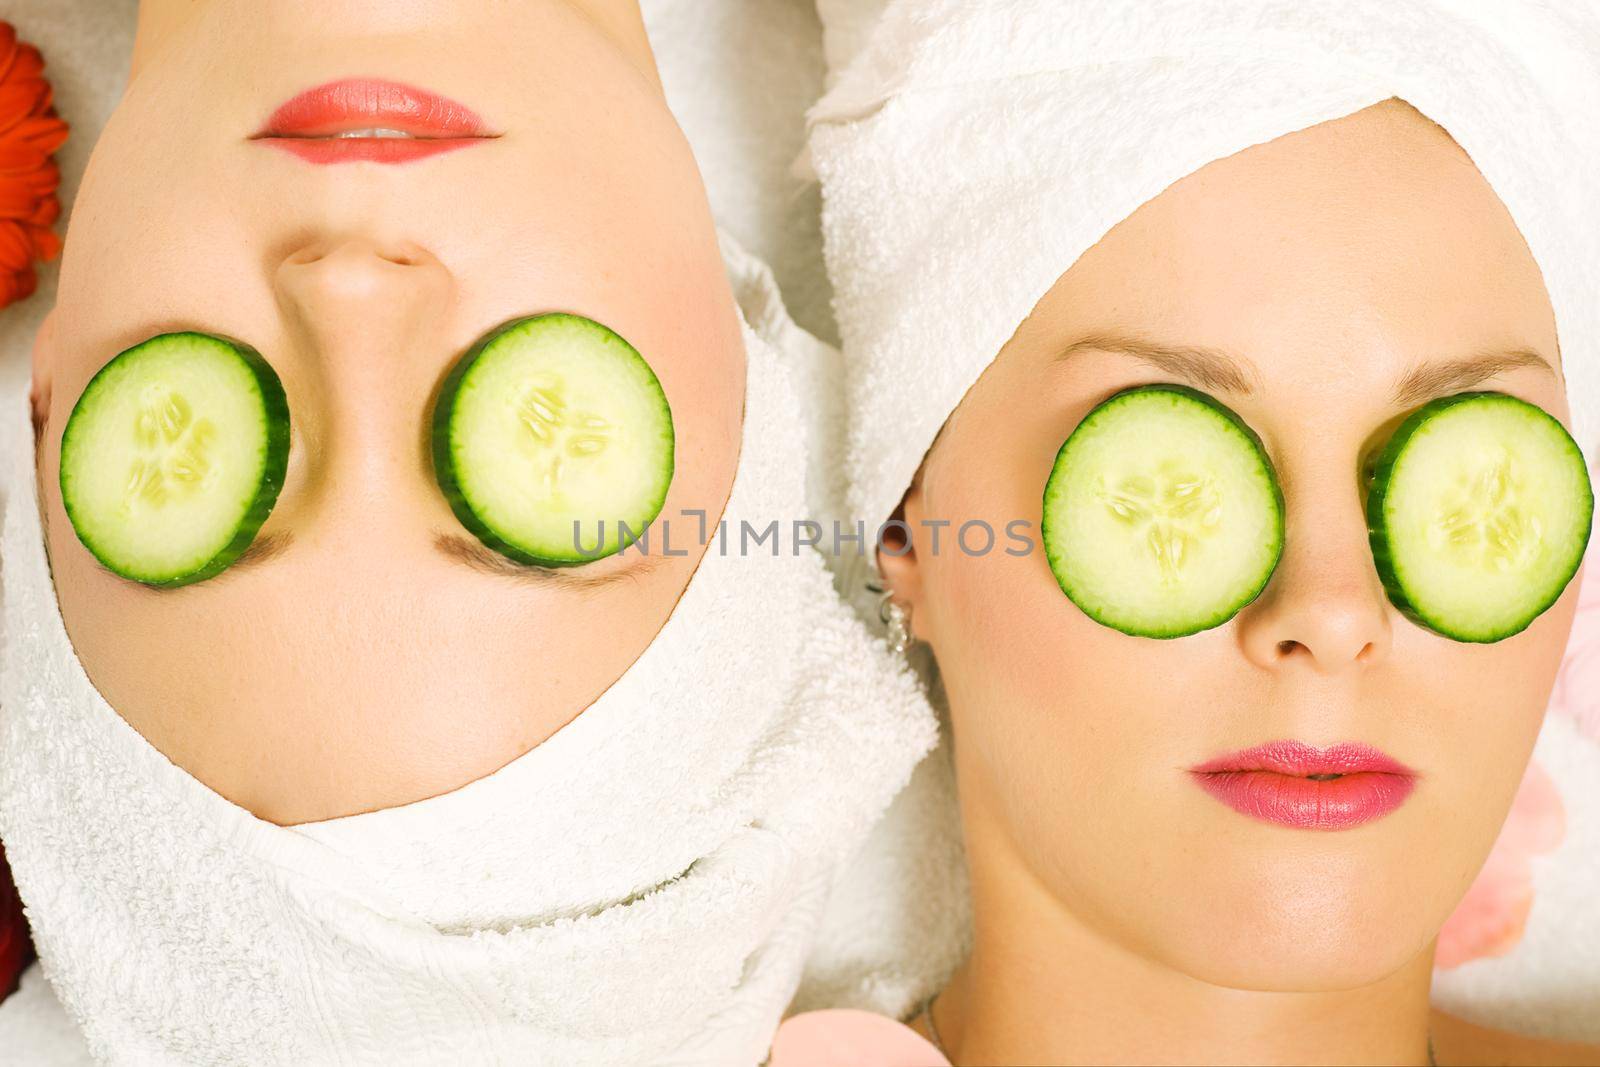 Cucumber beauty girls in spa by Kzenon